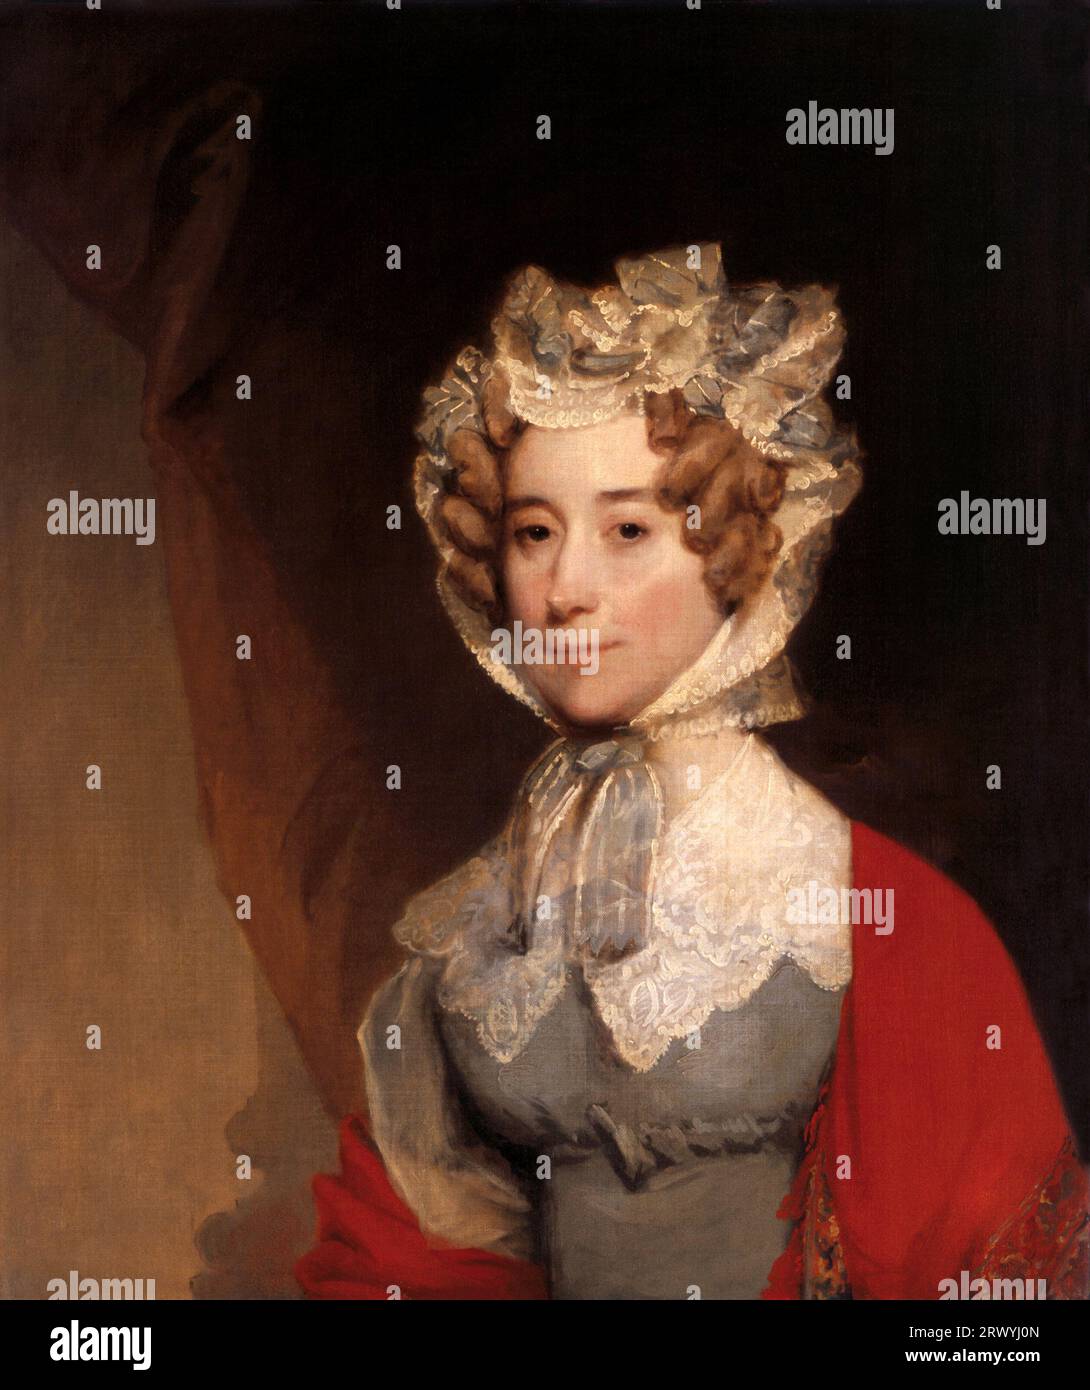 Louisa Catherine Adams (1775 – 1852) première dame des États-Unis de 1825 à 1829 la sixième première dame des États-Unis, Louisa Catherine Adams 1821–1826, belle-fille de John et Abigail Adams. Peinture de Gilbert Stuart Banque D'Images